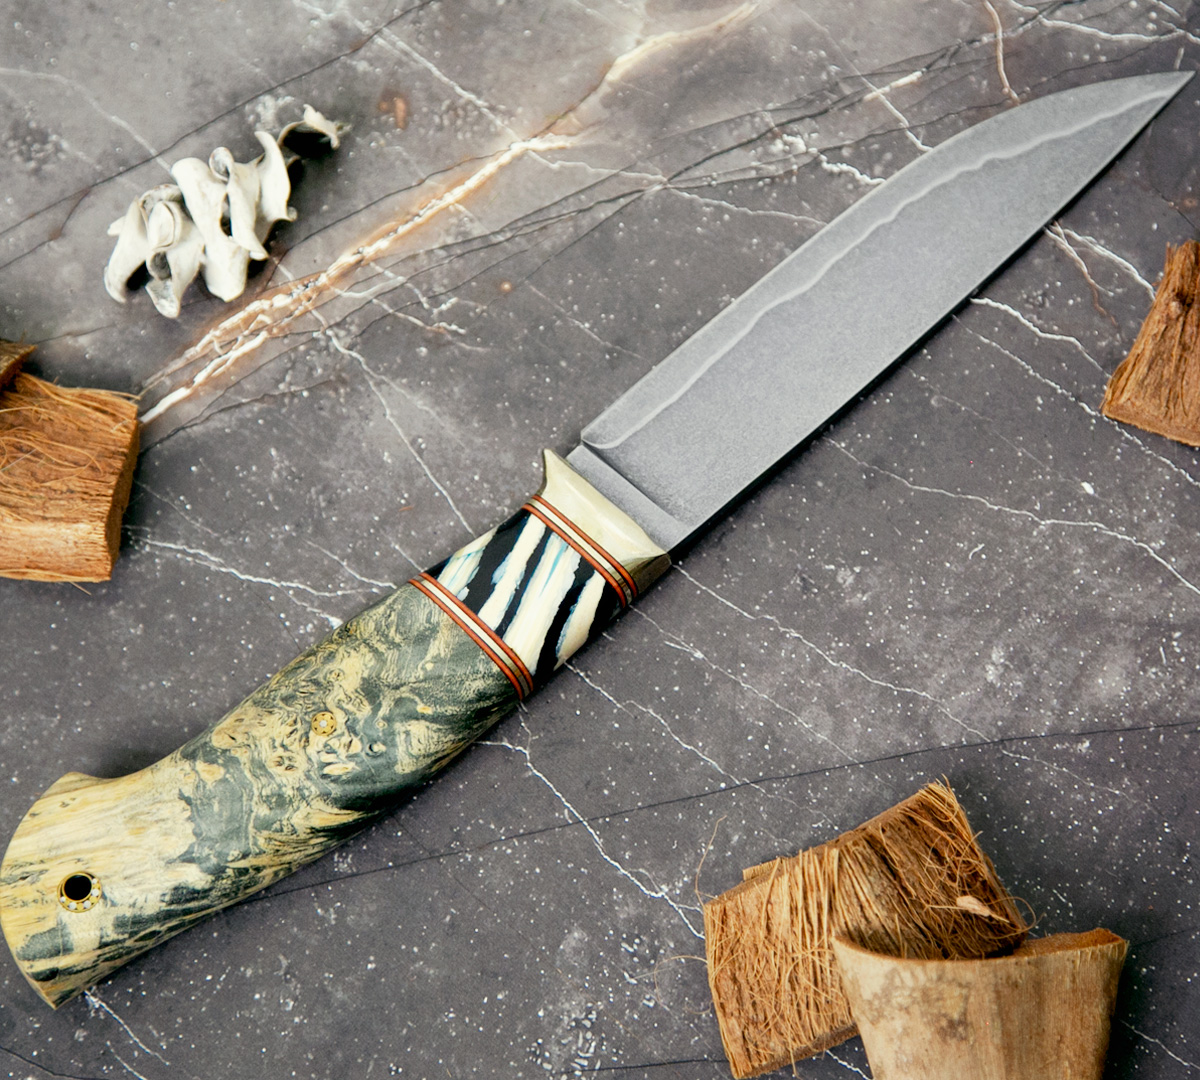 Нож Ладья из ламинированной стали